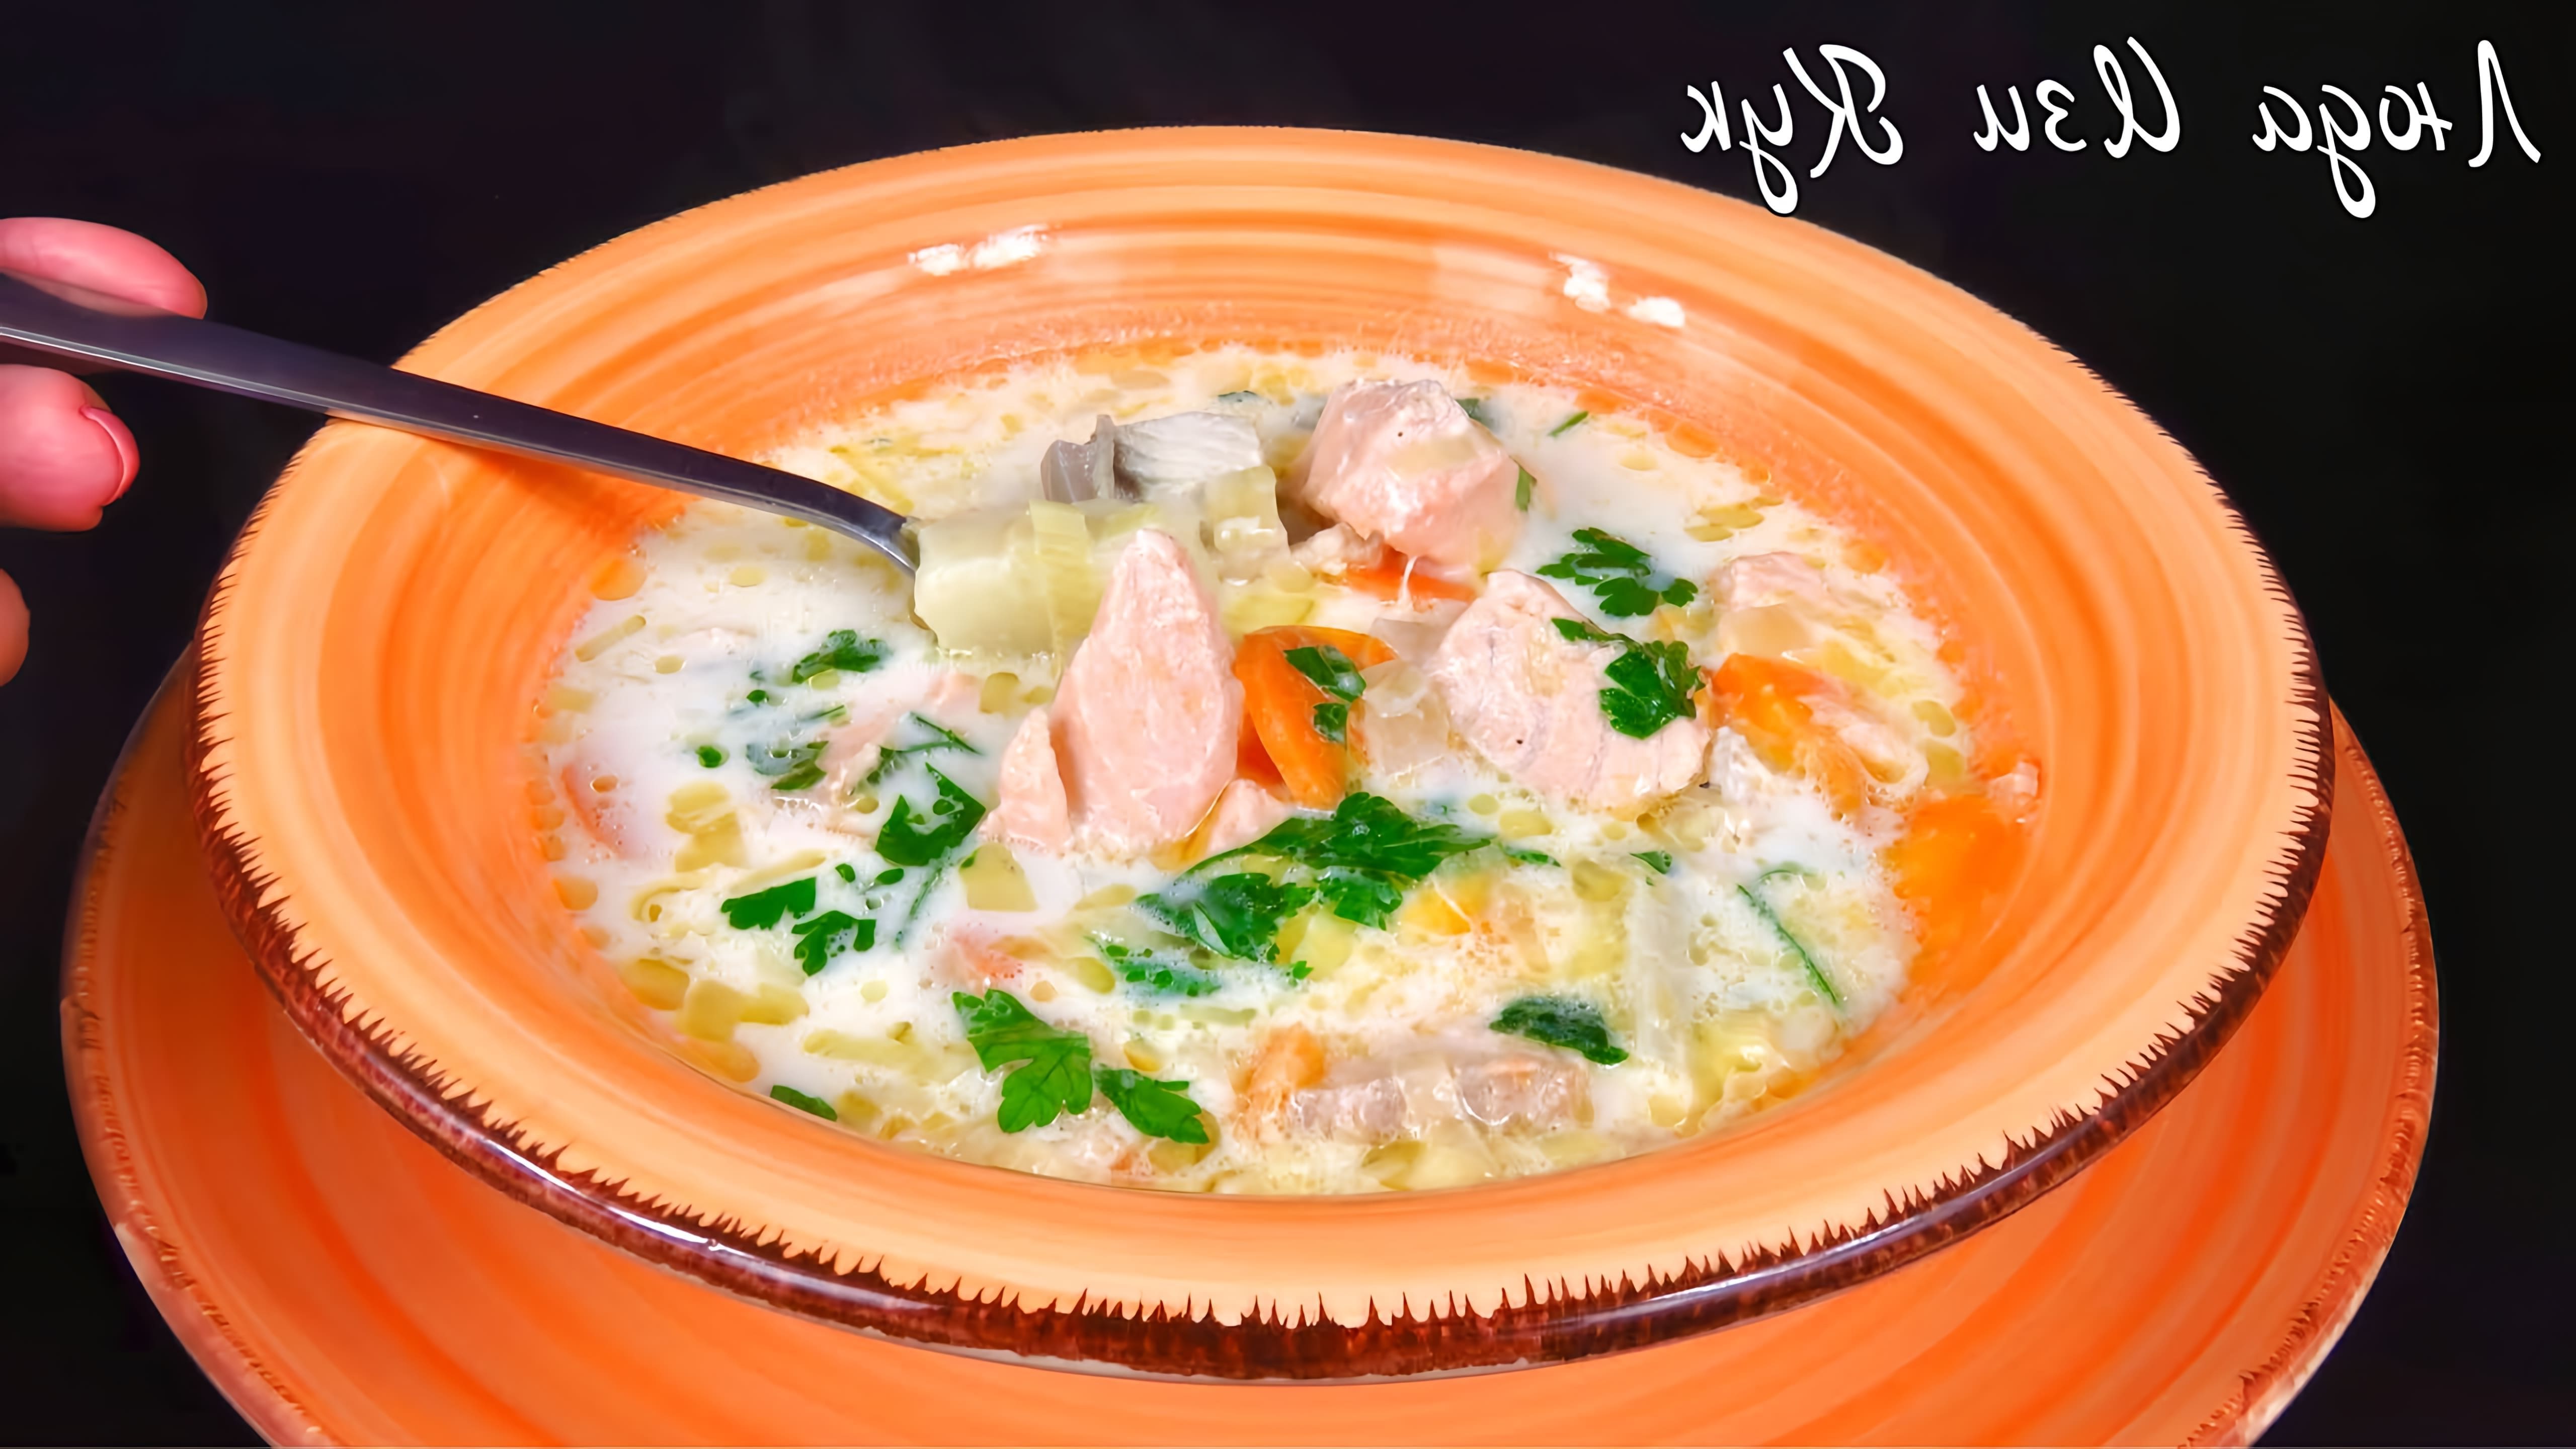 В этом видео Люда Изи Кук готовит уху по-фински - вкусный рыбный суп с красной рыбой и нежным сливочным вкусом